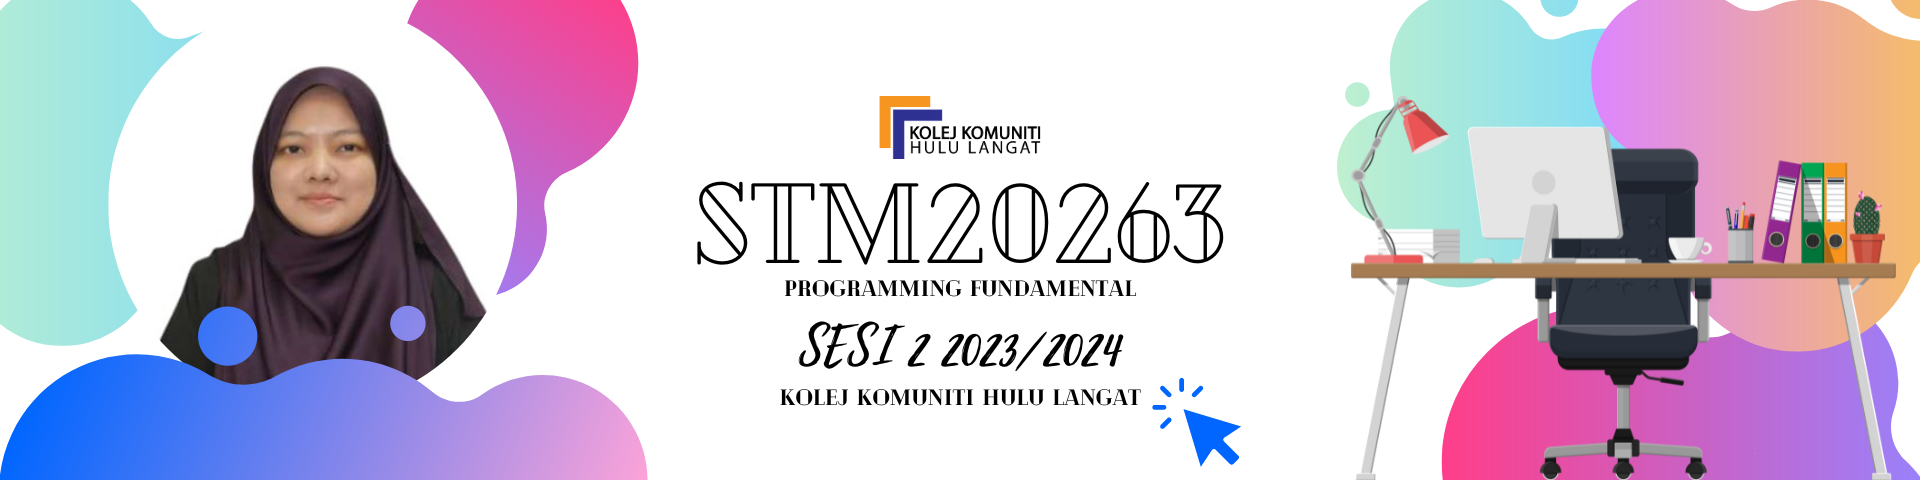 STM 20263 PROGRAMMING FUNDAMENTALS